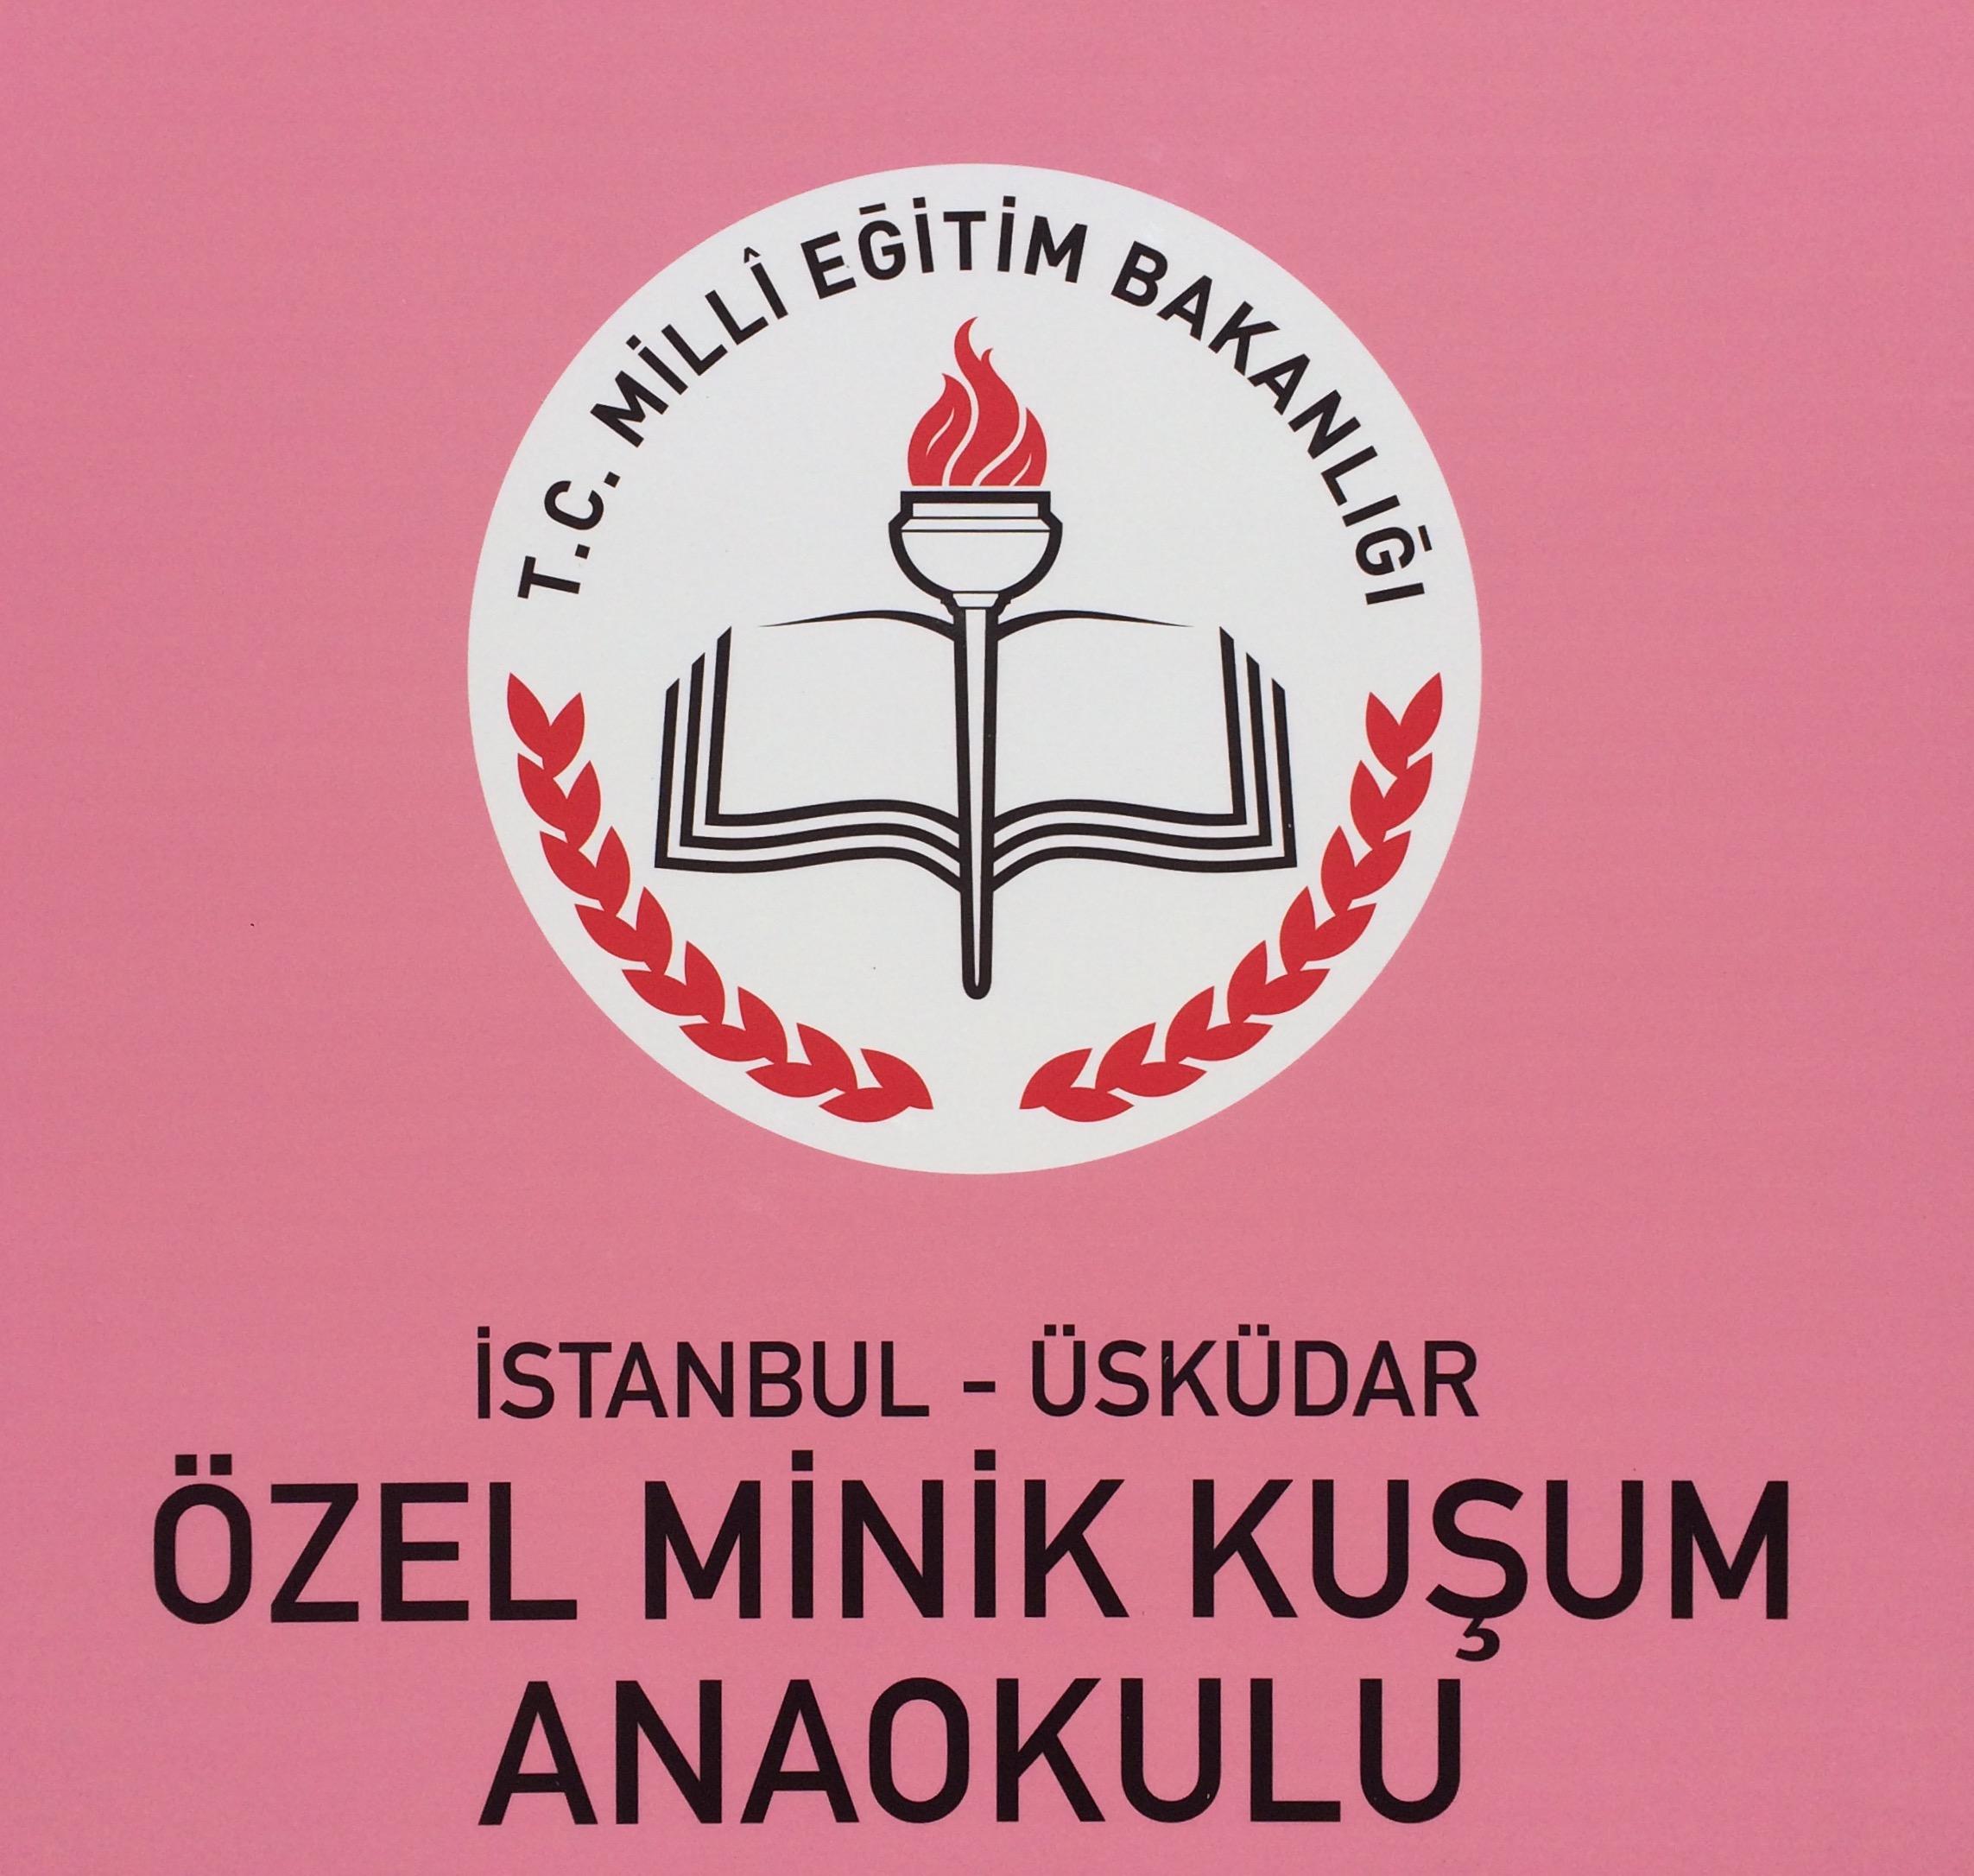 Nursery logo ÜSKÜDAR ÖZEL MINIK KUŞUM ANAOKULU